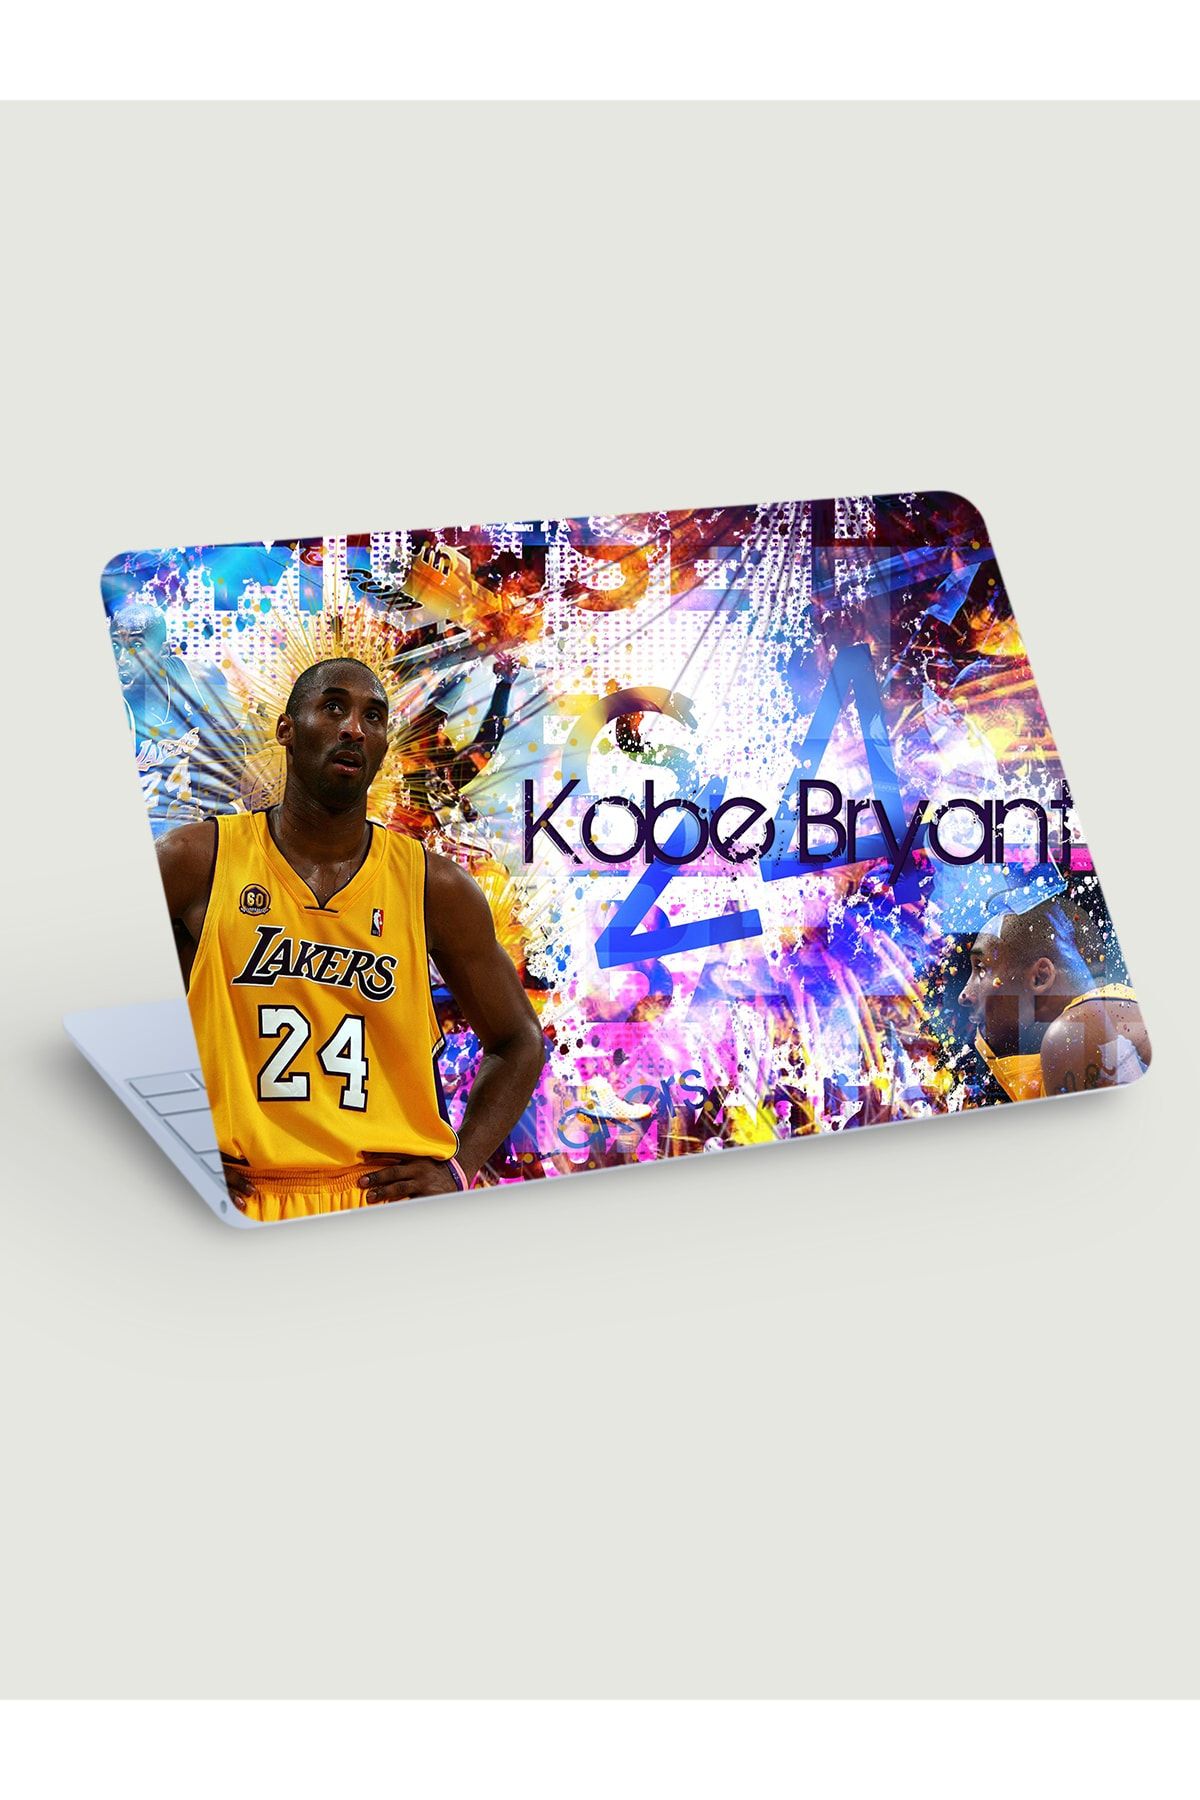 KT Decor Kobe Bryant Black Mamba Laptop Sticker